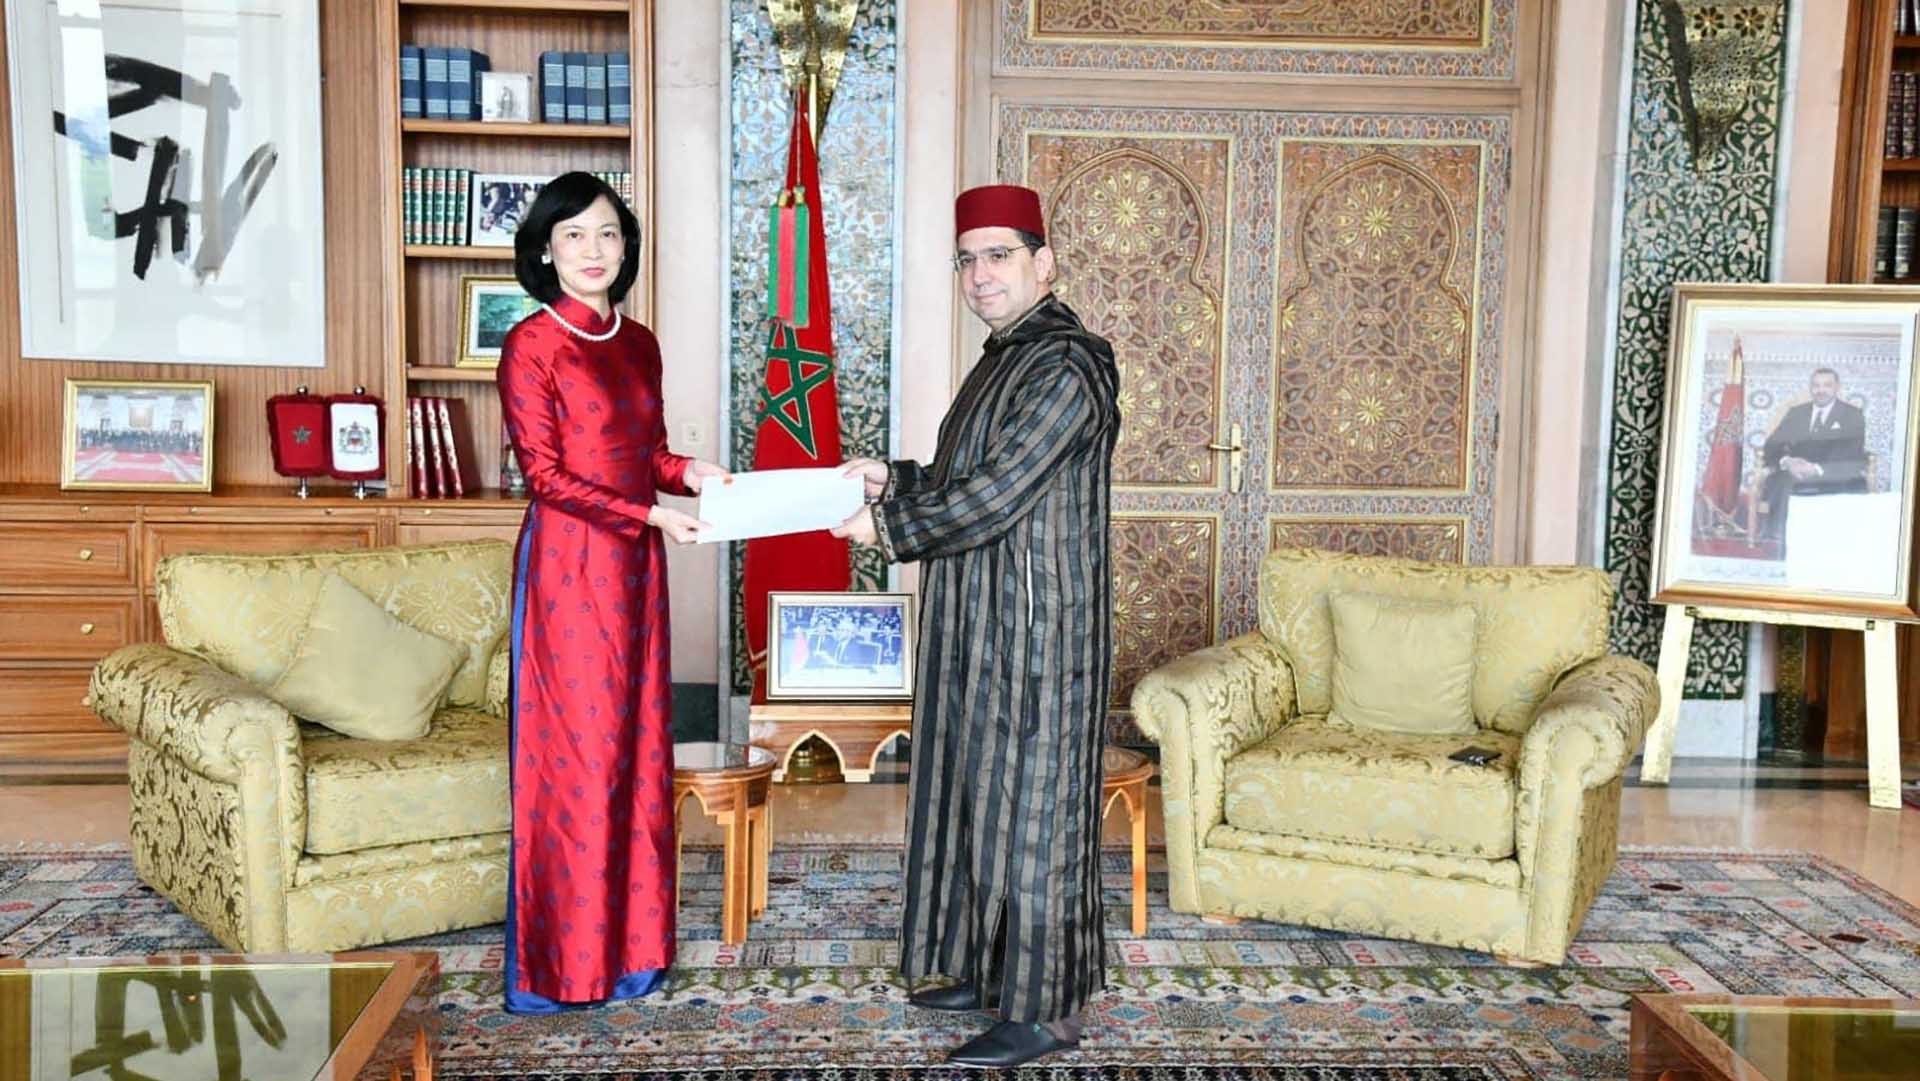 Đại sứ Lê Kim Quy trình bản sao Thư uỷ nhiệm lên Bộ trưởng Ngoại giao, hợp tác châu Phi và người Morocco ở nước ngoài Nasser Bourita.